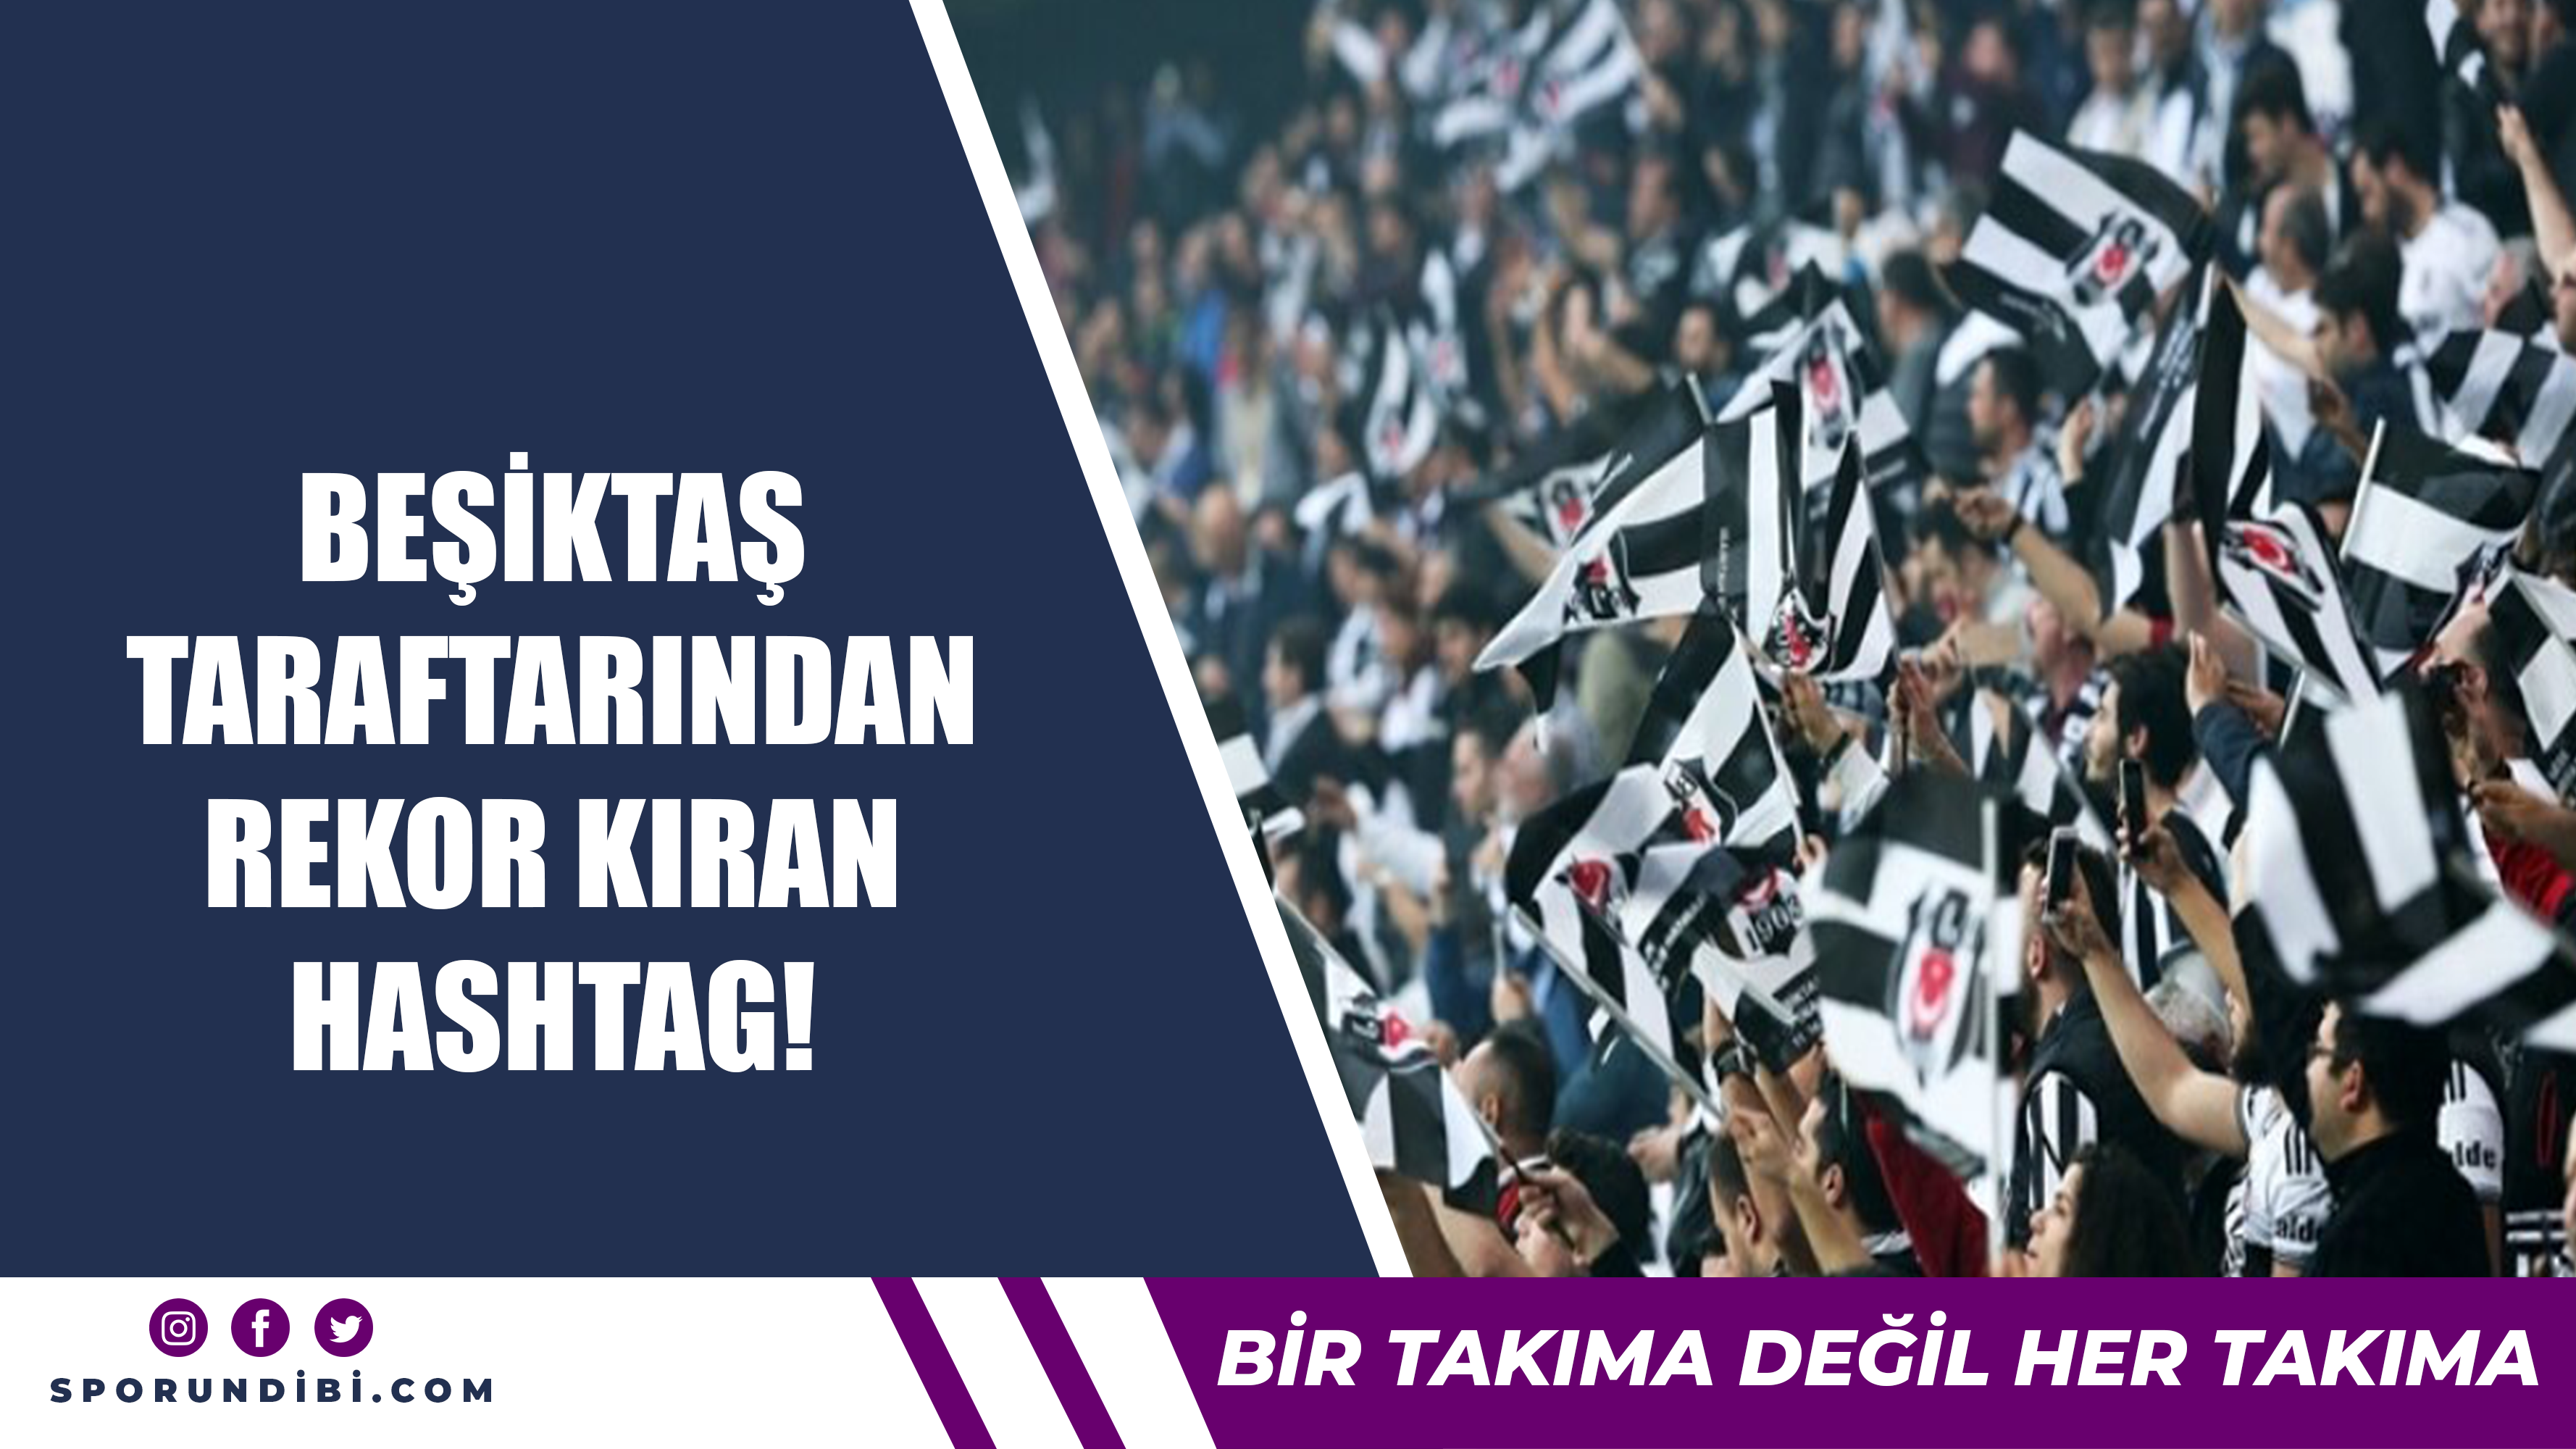 Beşiktaş taraftarından rekor kıran hashtag!